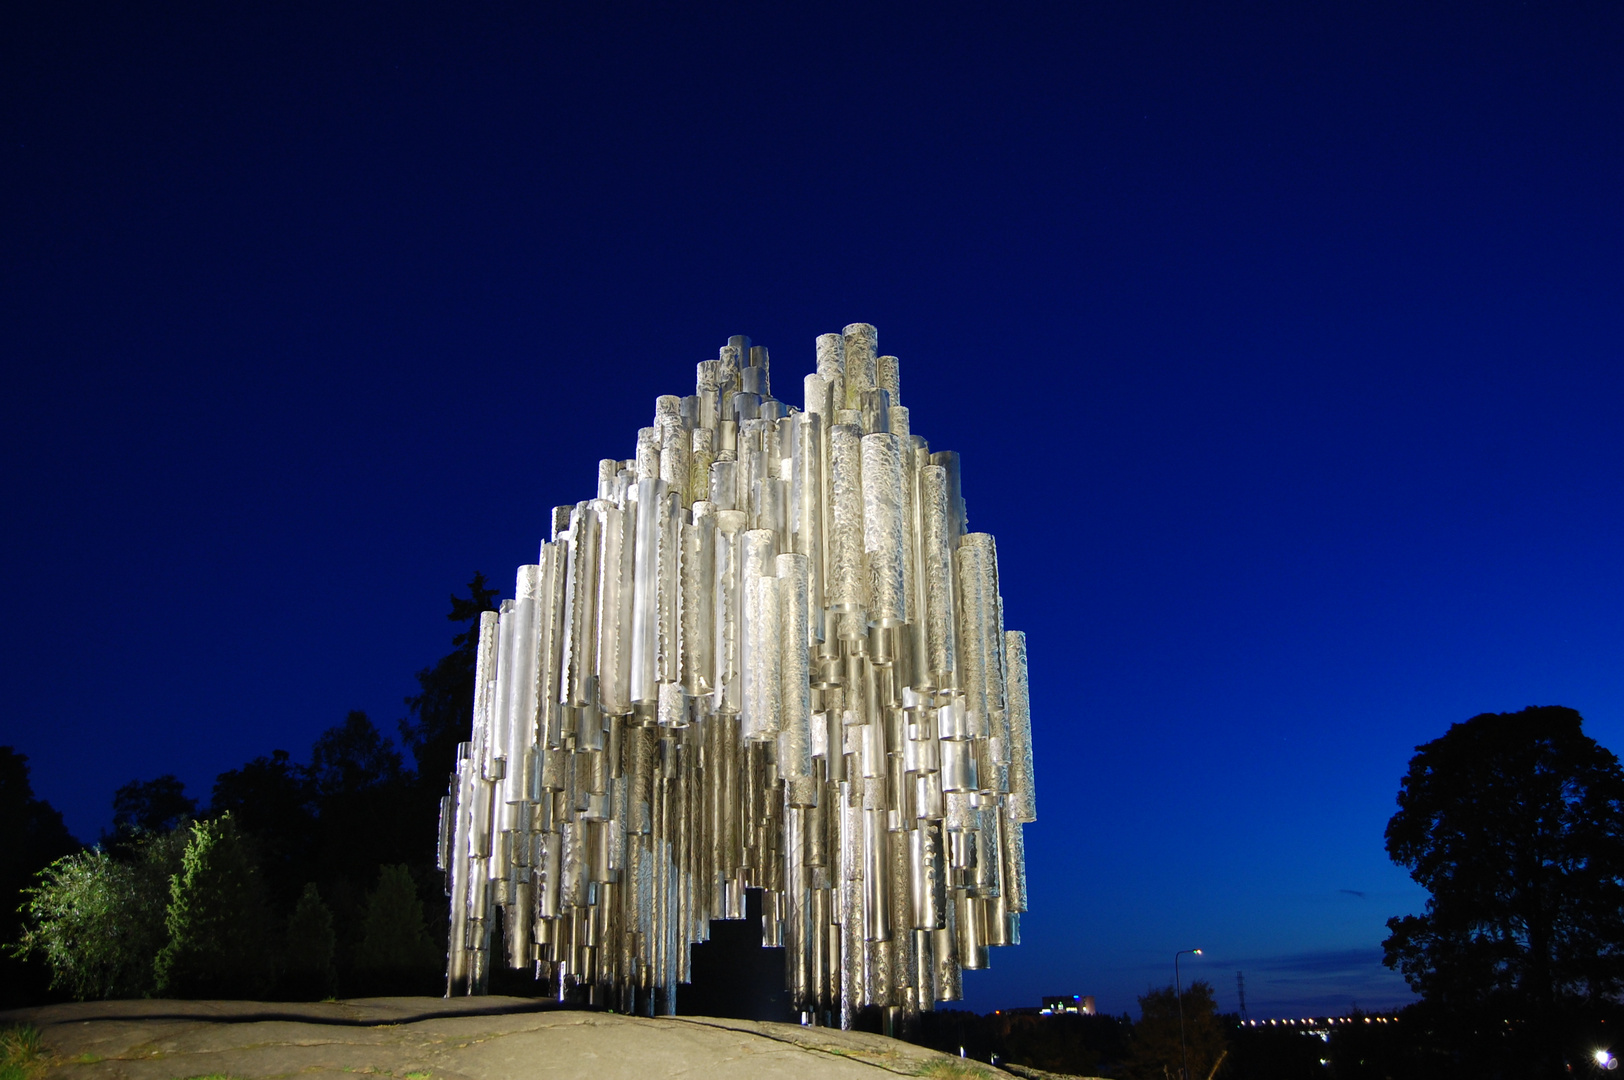 Helsinki, Sibelius monument